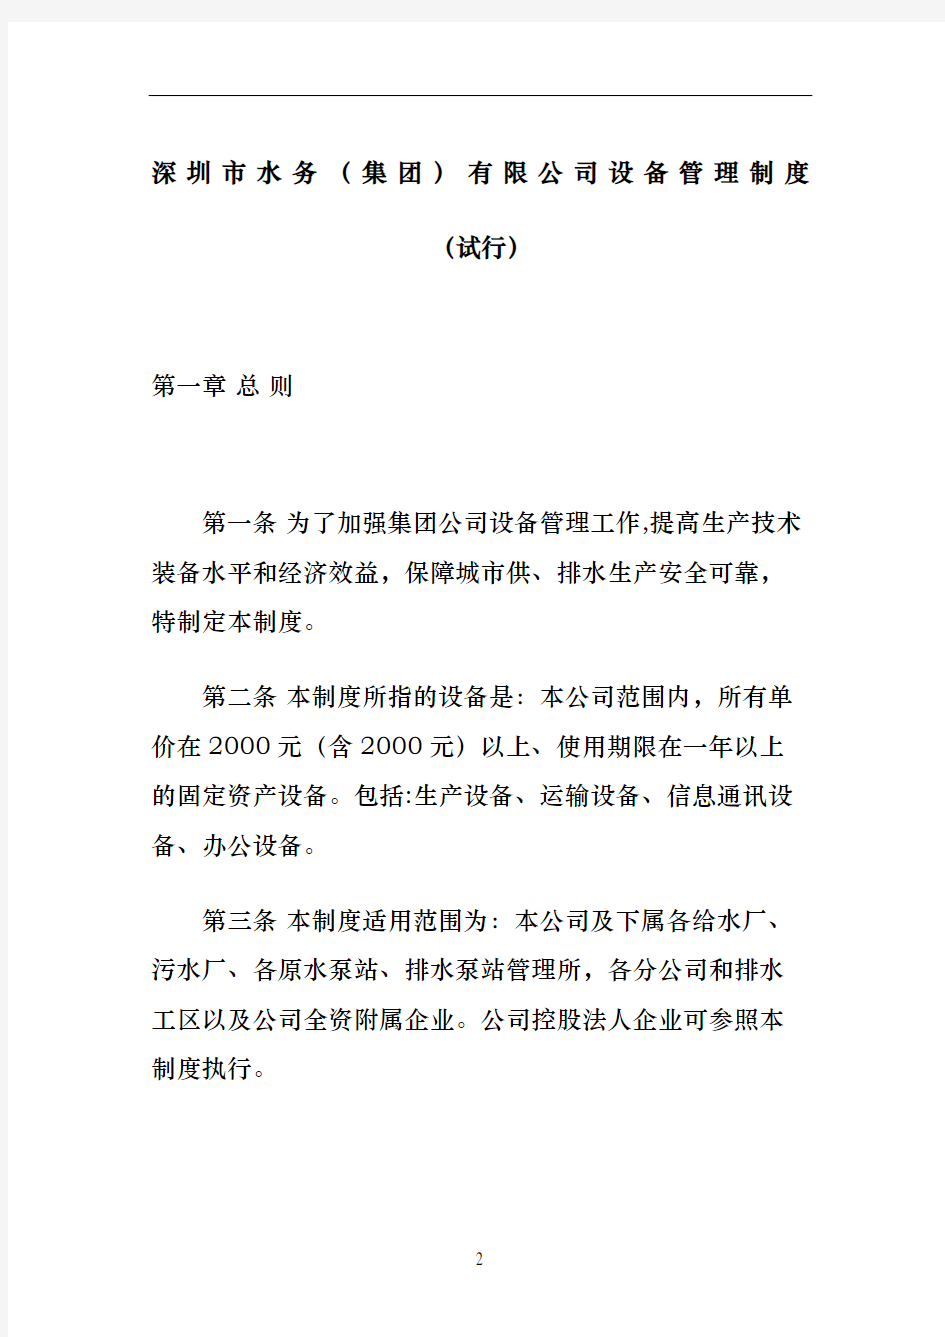 深圳市水务集团公司设备管理规定试行